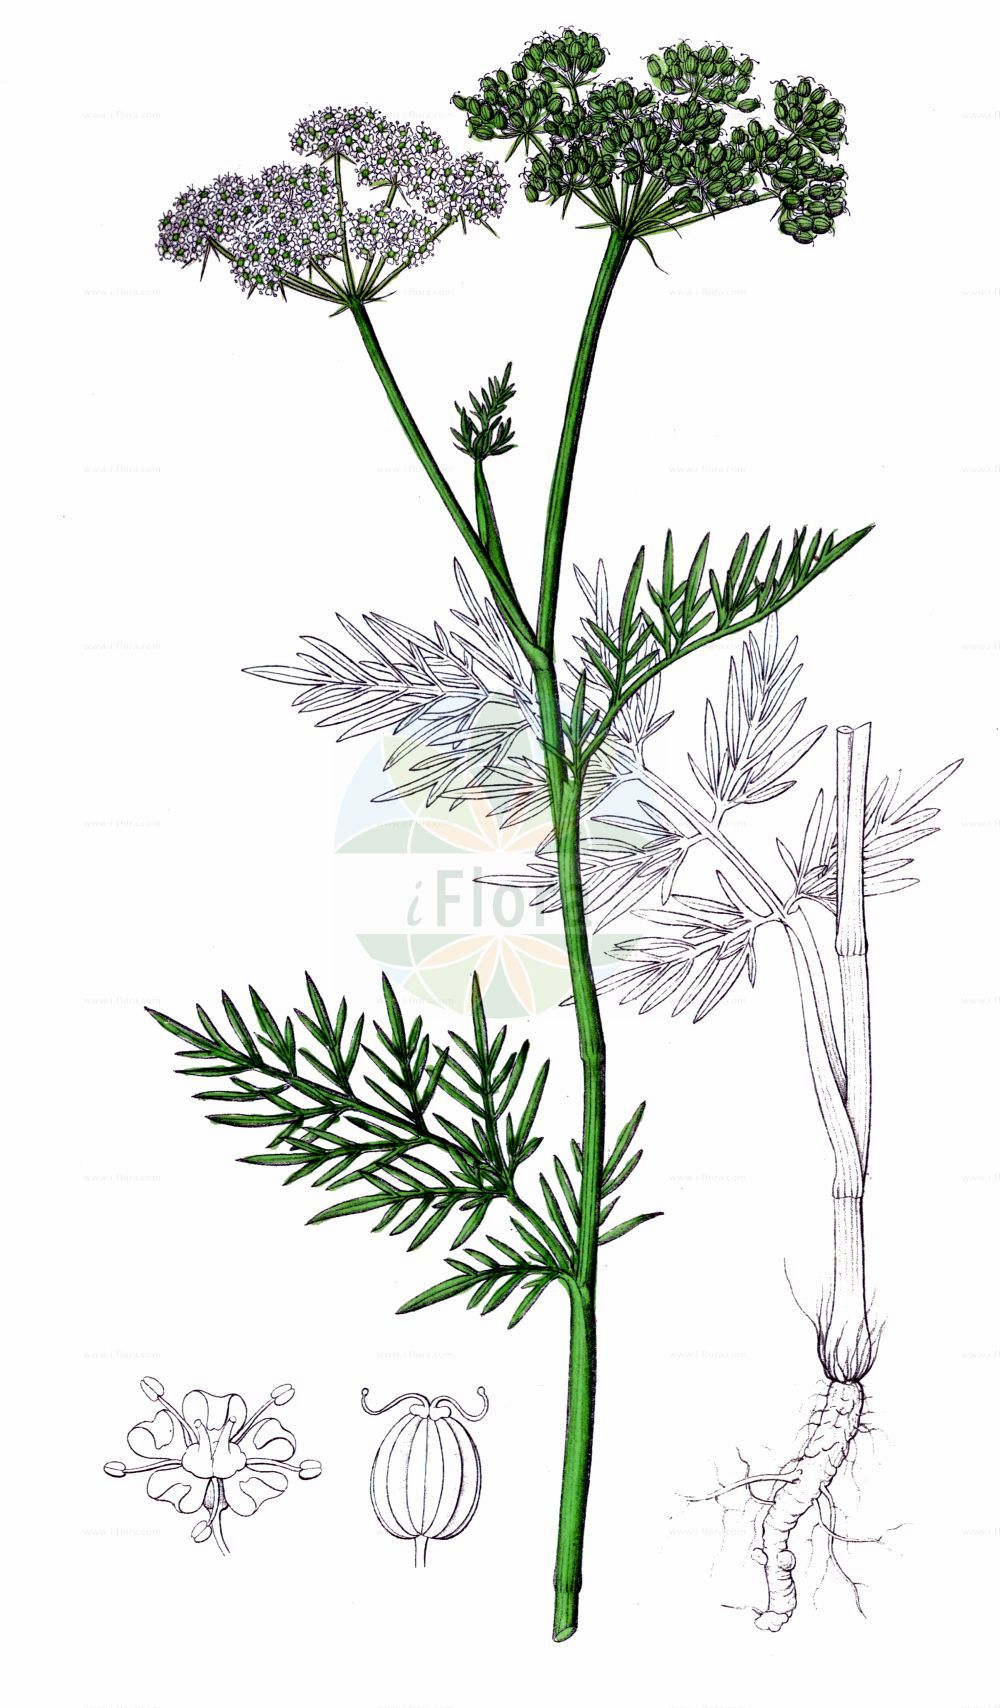 Historische Abbildung von Selinum dubium (Sumpf-Brenndolde - Doubtful Chickweed). Das Bild zeigt Blatt, Bluete, Frucht und Same. ---- Historical Drawing of Selinum dubium (Sumpf-Brenndolde - Doubtful Chickweed). The image is showing leaf, flower, fruit and seed.(Selinum dubium,Sumpf-Brenndolde,Doubtful Chickweed,Cnidium dubium,Cnidium venosum,Kadenia dubia,Selinum dubium,Selinum venosum,Seseli dubium,Seseli venosum,Sumpf-Brenndolde,Doubtful Chickweed,Selinum,Silge,Apiaceae,Doldengewächse,Carrot family,Blatt,Bluete,Frucht,Same,leaf,flower,fruit,seed,Dietrich (1833-1844))